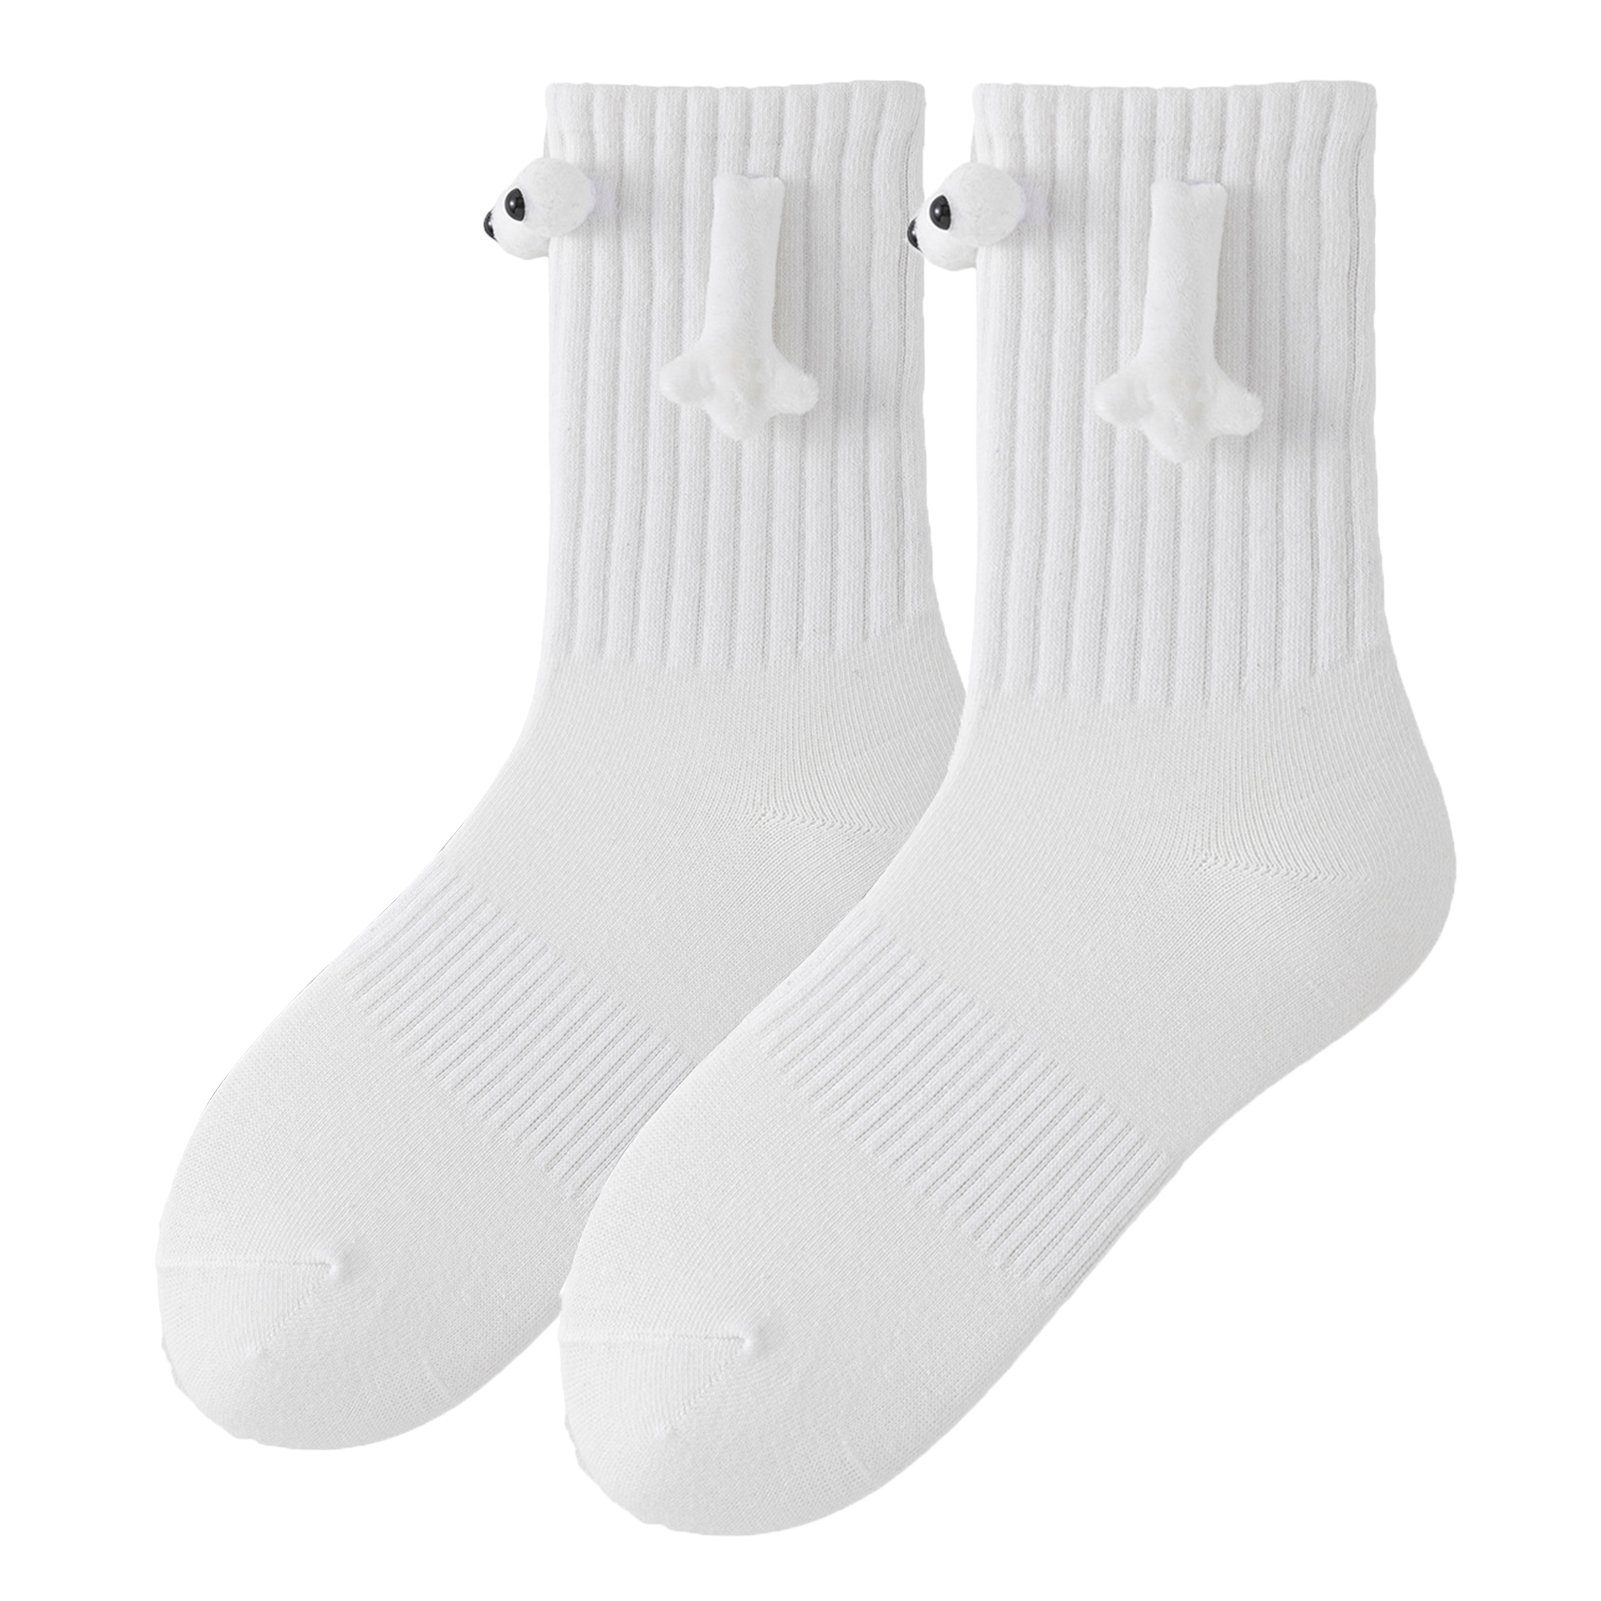 Halten Socken Paar) Süße Socken 1 Weiss Hände Liebhaber Strümpfe Socken Die magnetische (1-Paar, Rutaqian